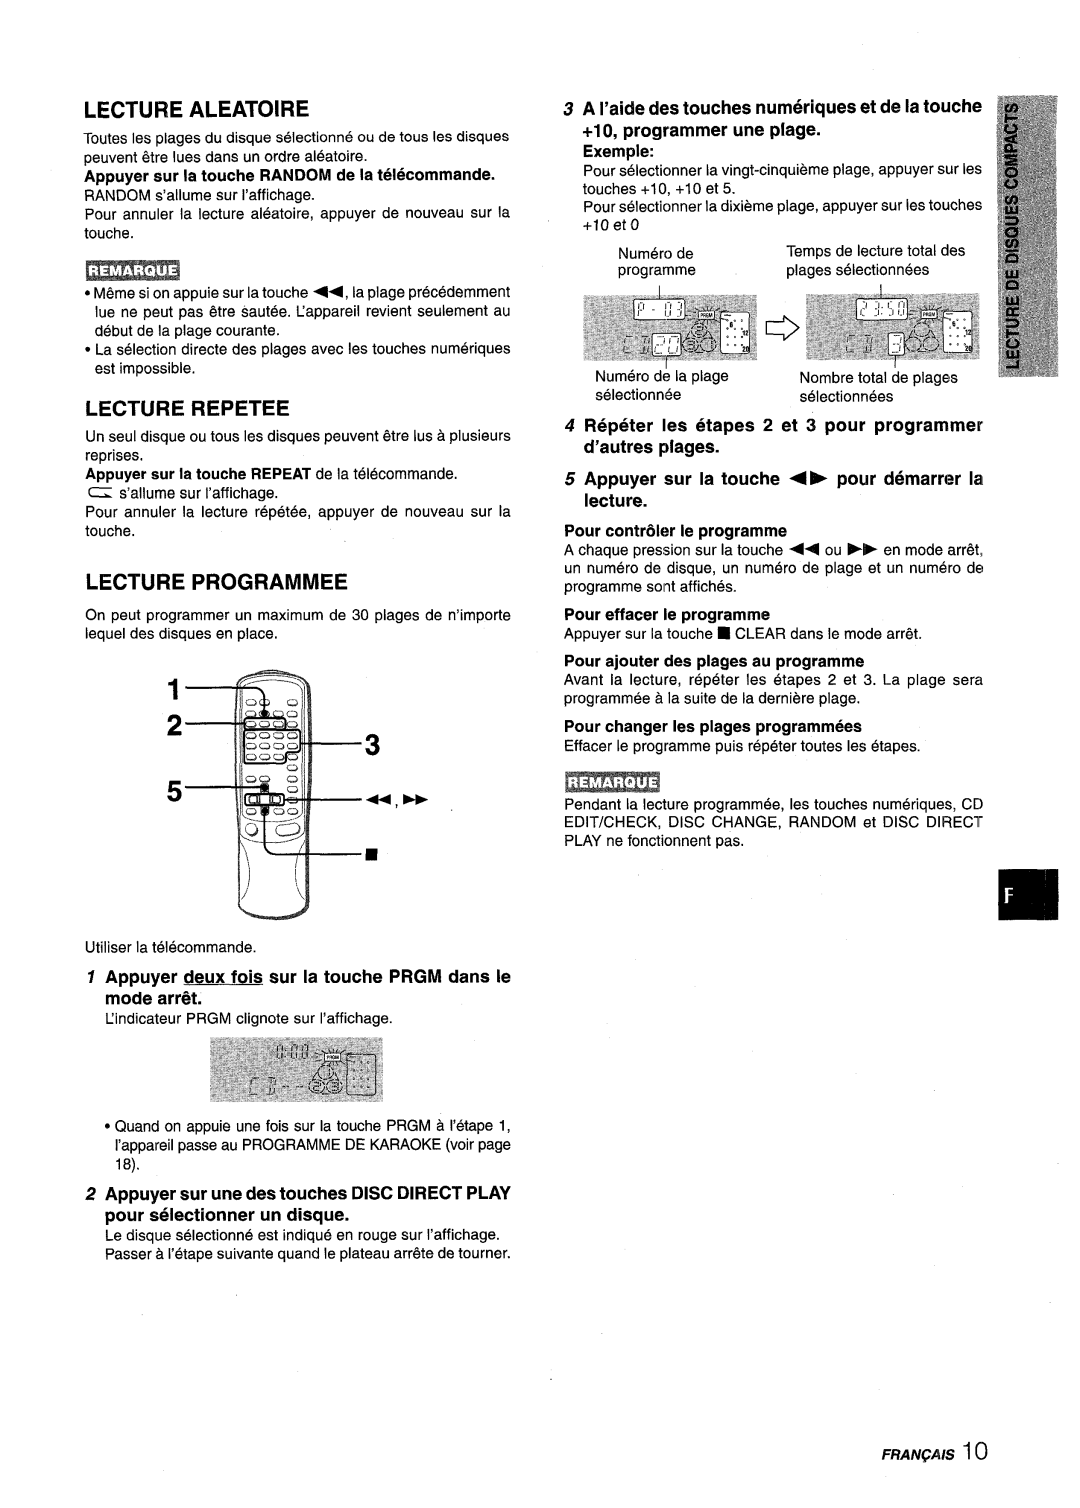 Aiwa NSX-V9000 manual 5+,D+, Lecture Aleatoire, Lecture Repetee, Lecture Programmed, Exemple, etapes 2 et 3 pour programmer 